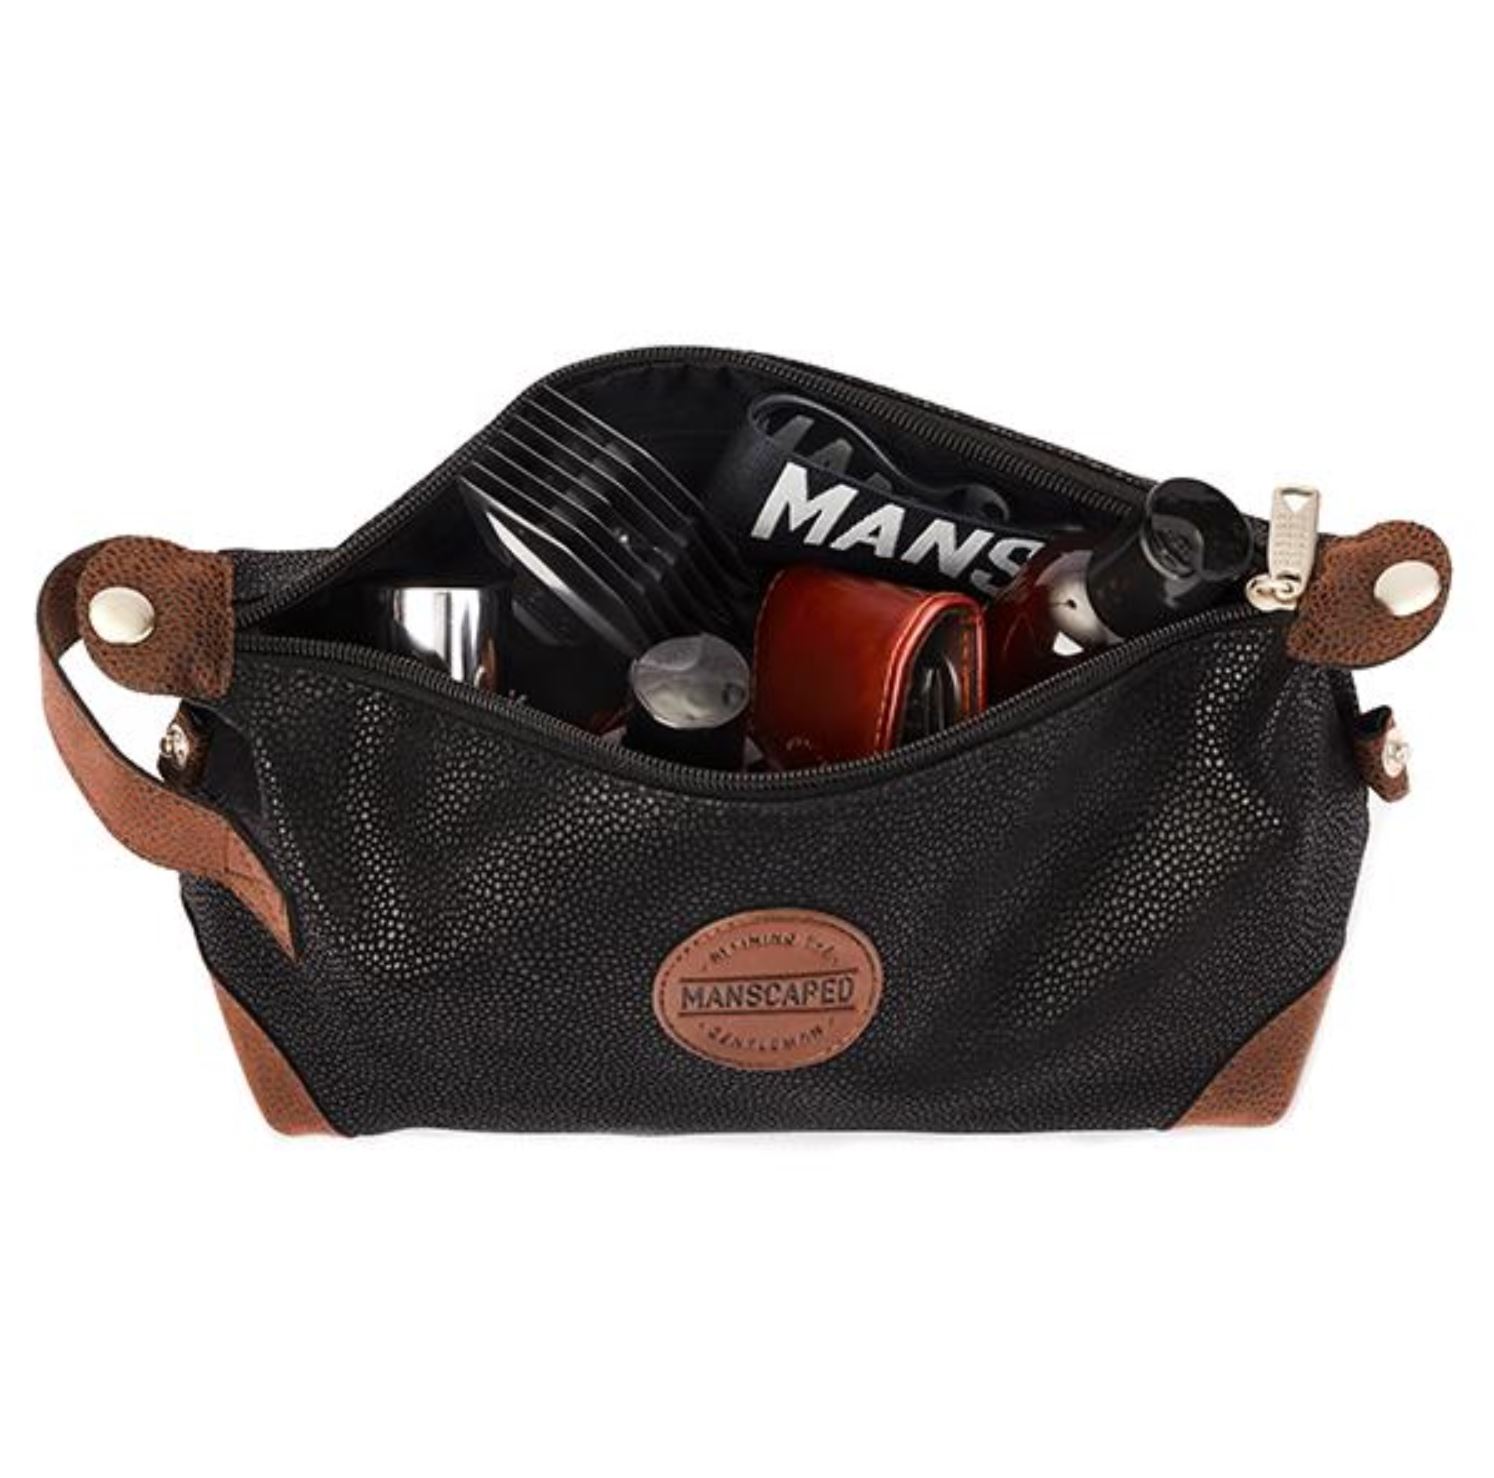 manscaped kit travel bag